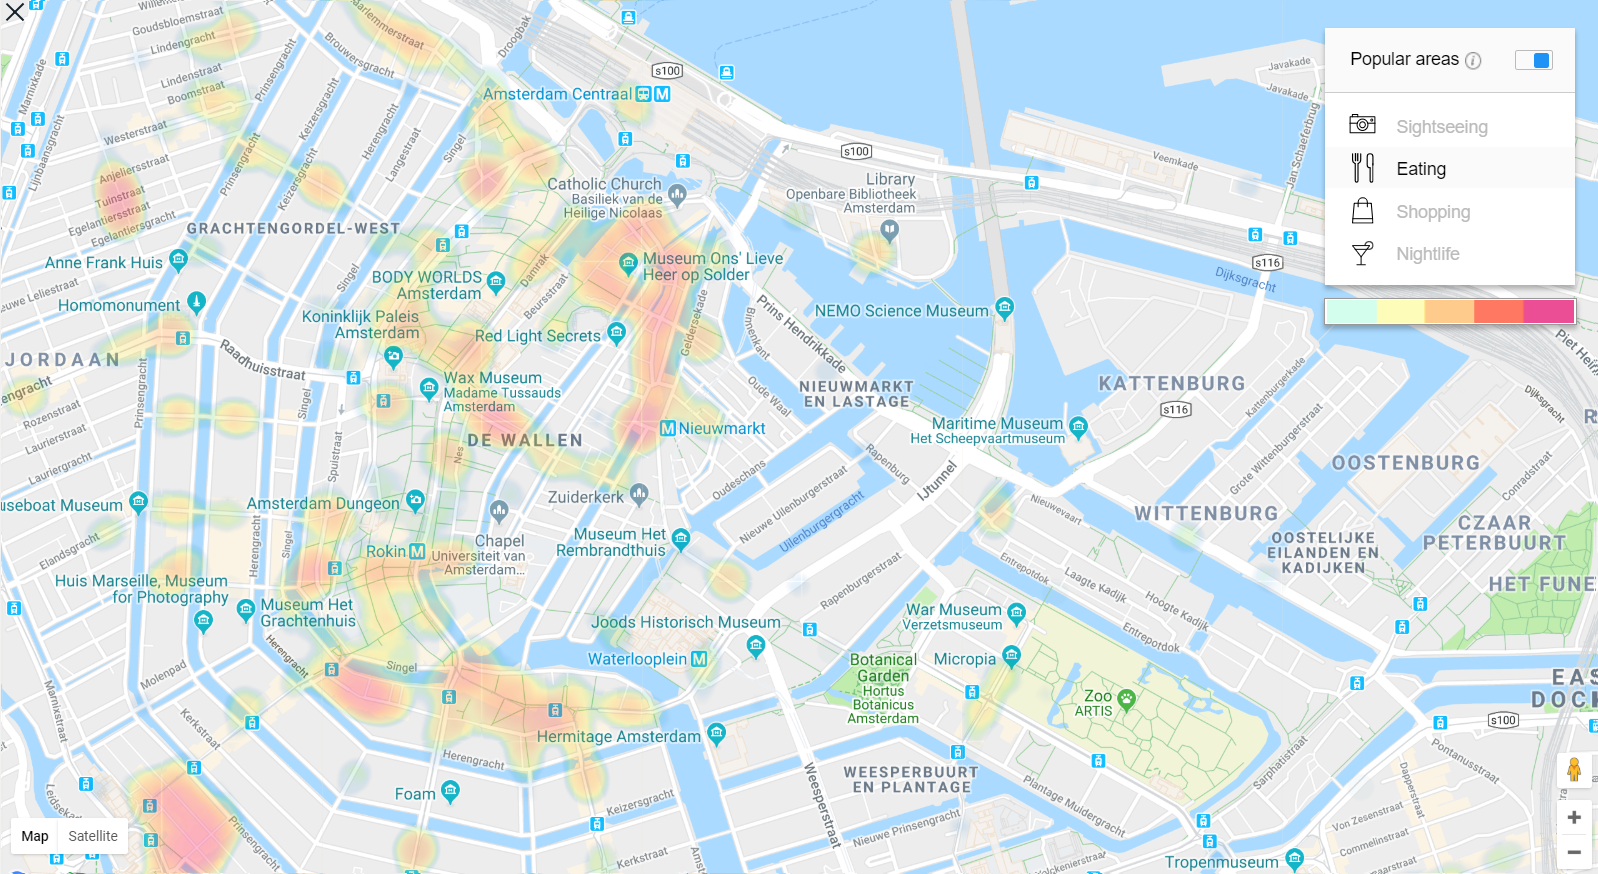 Amsterdam Heat Map für die beliebtesten Restaurants und Foodie Spots